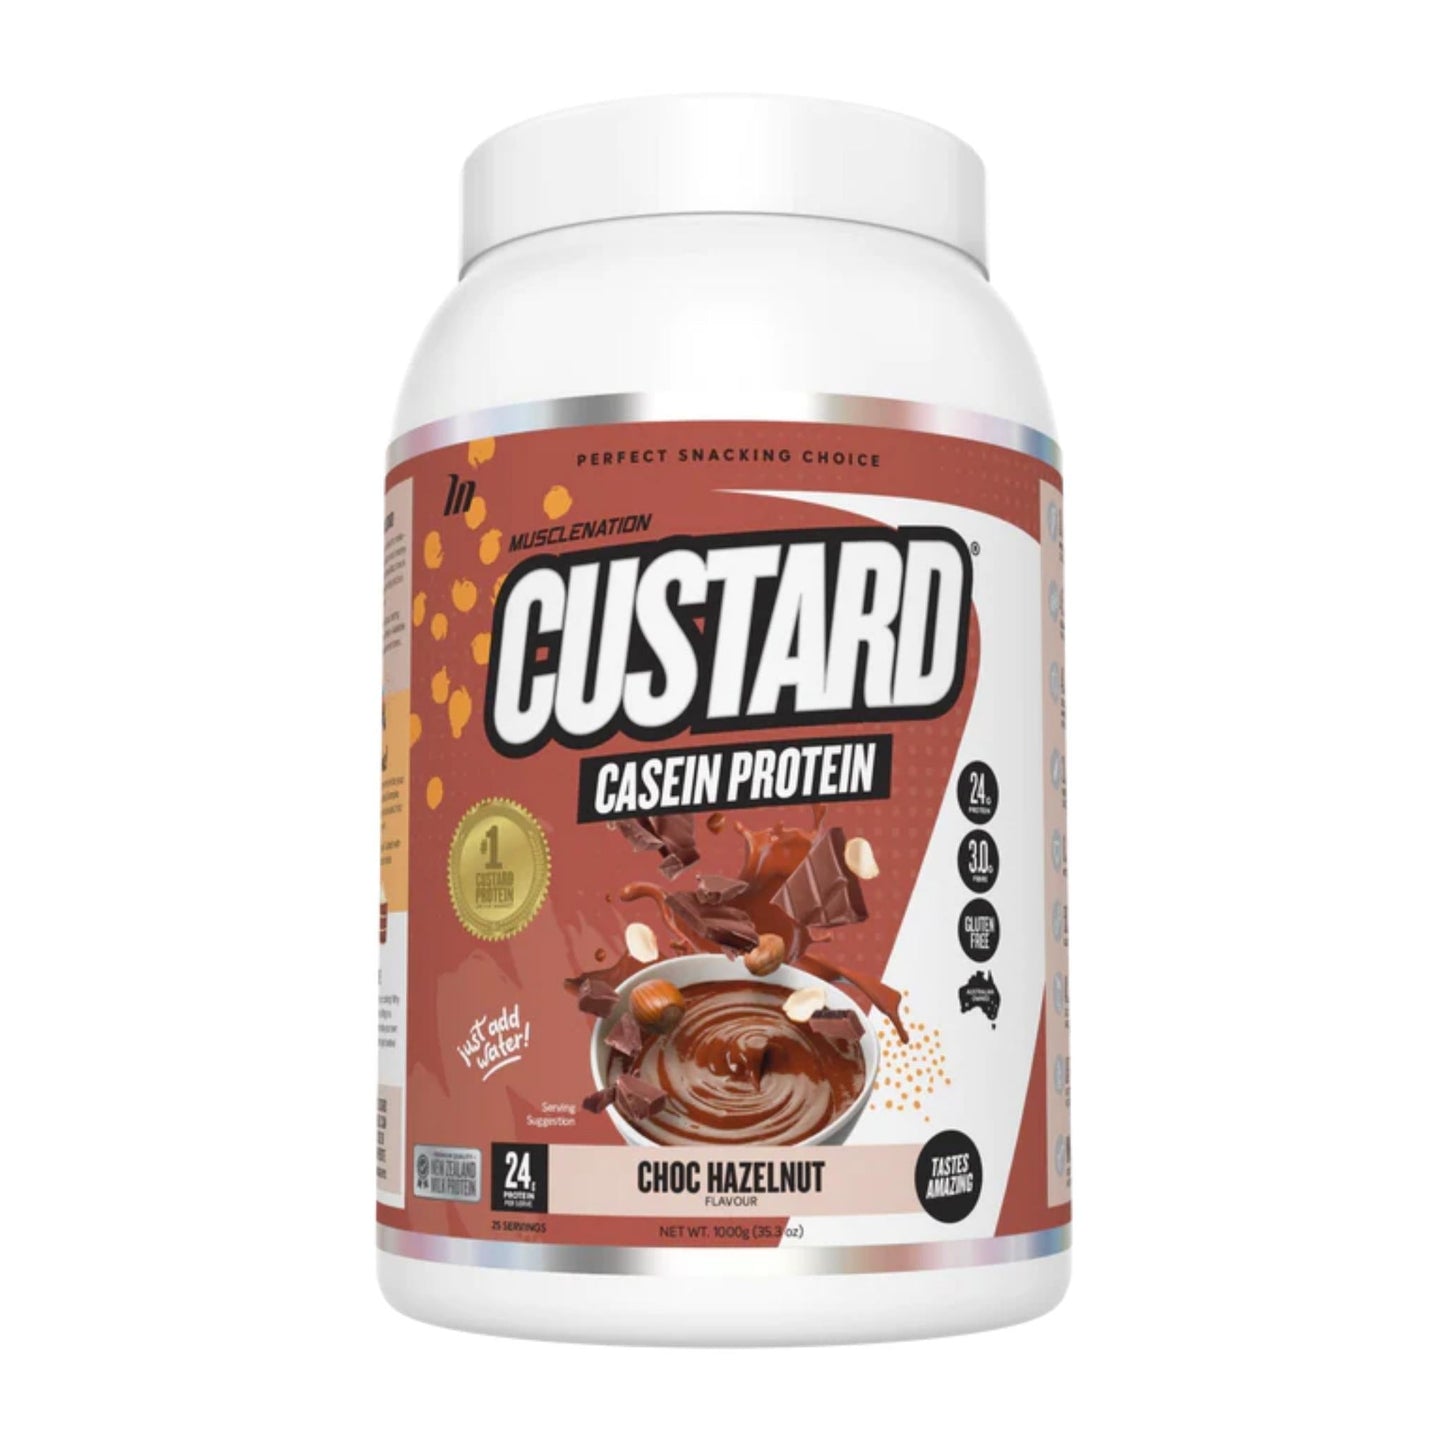 Muscle Nation - Custard Casein Protein - Supplements - Choc Hazelnut - The Cave Gym